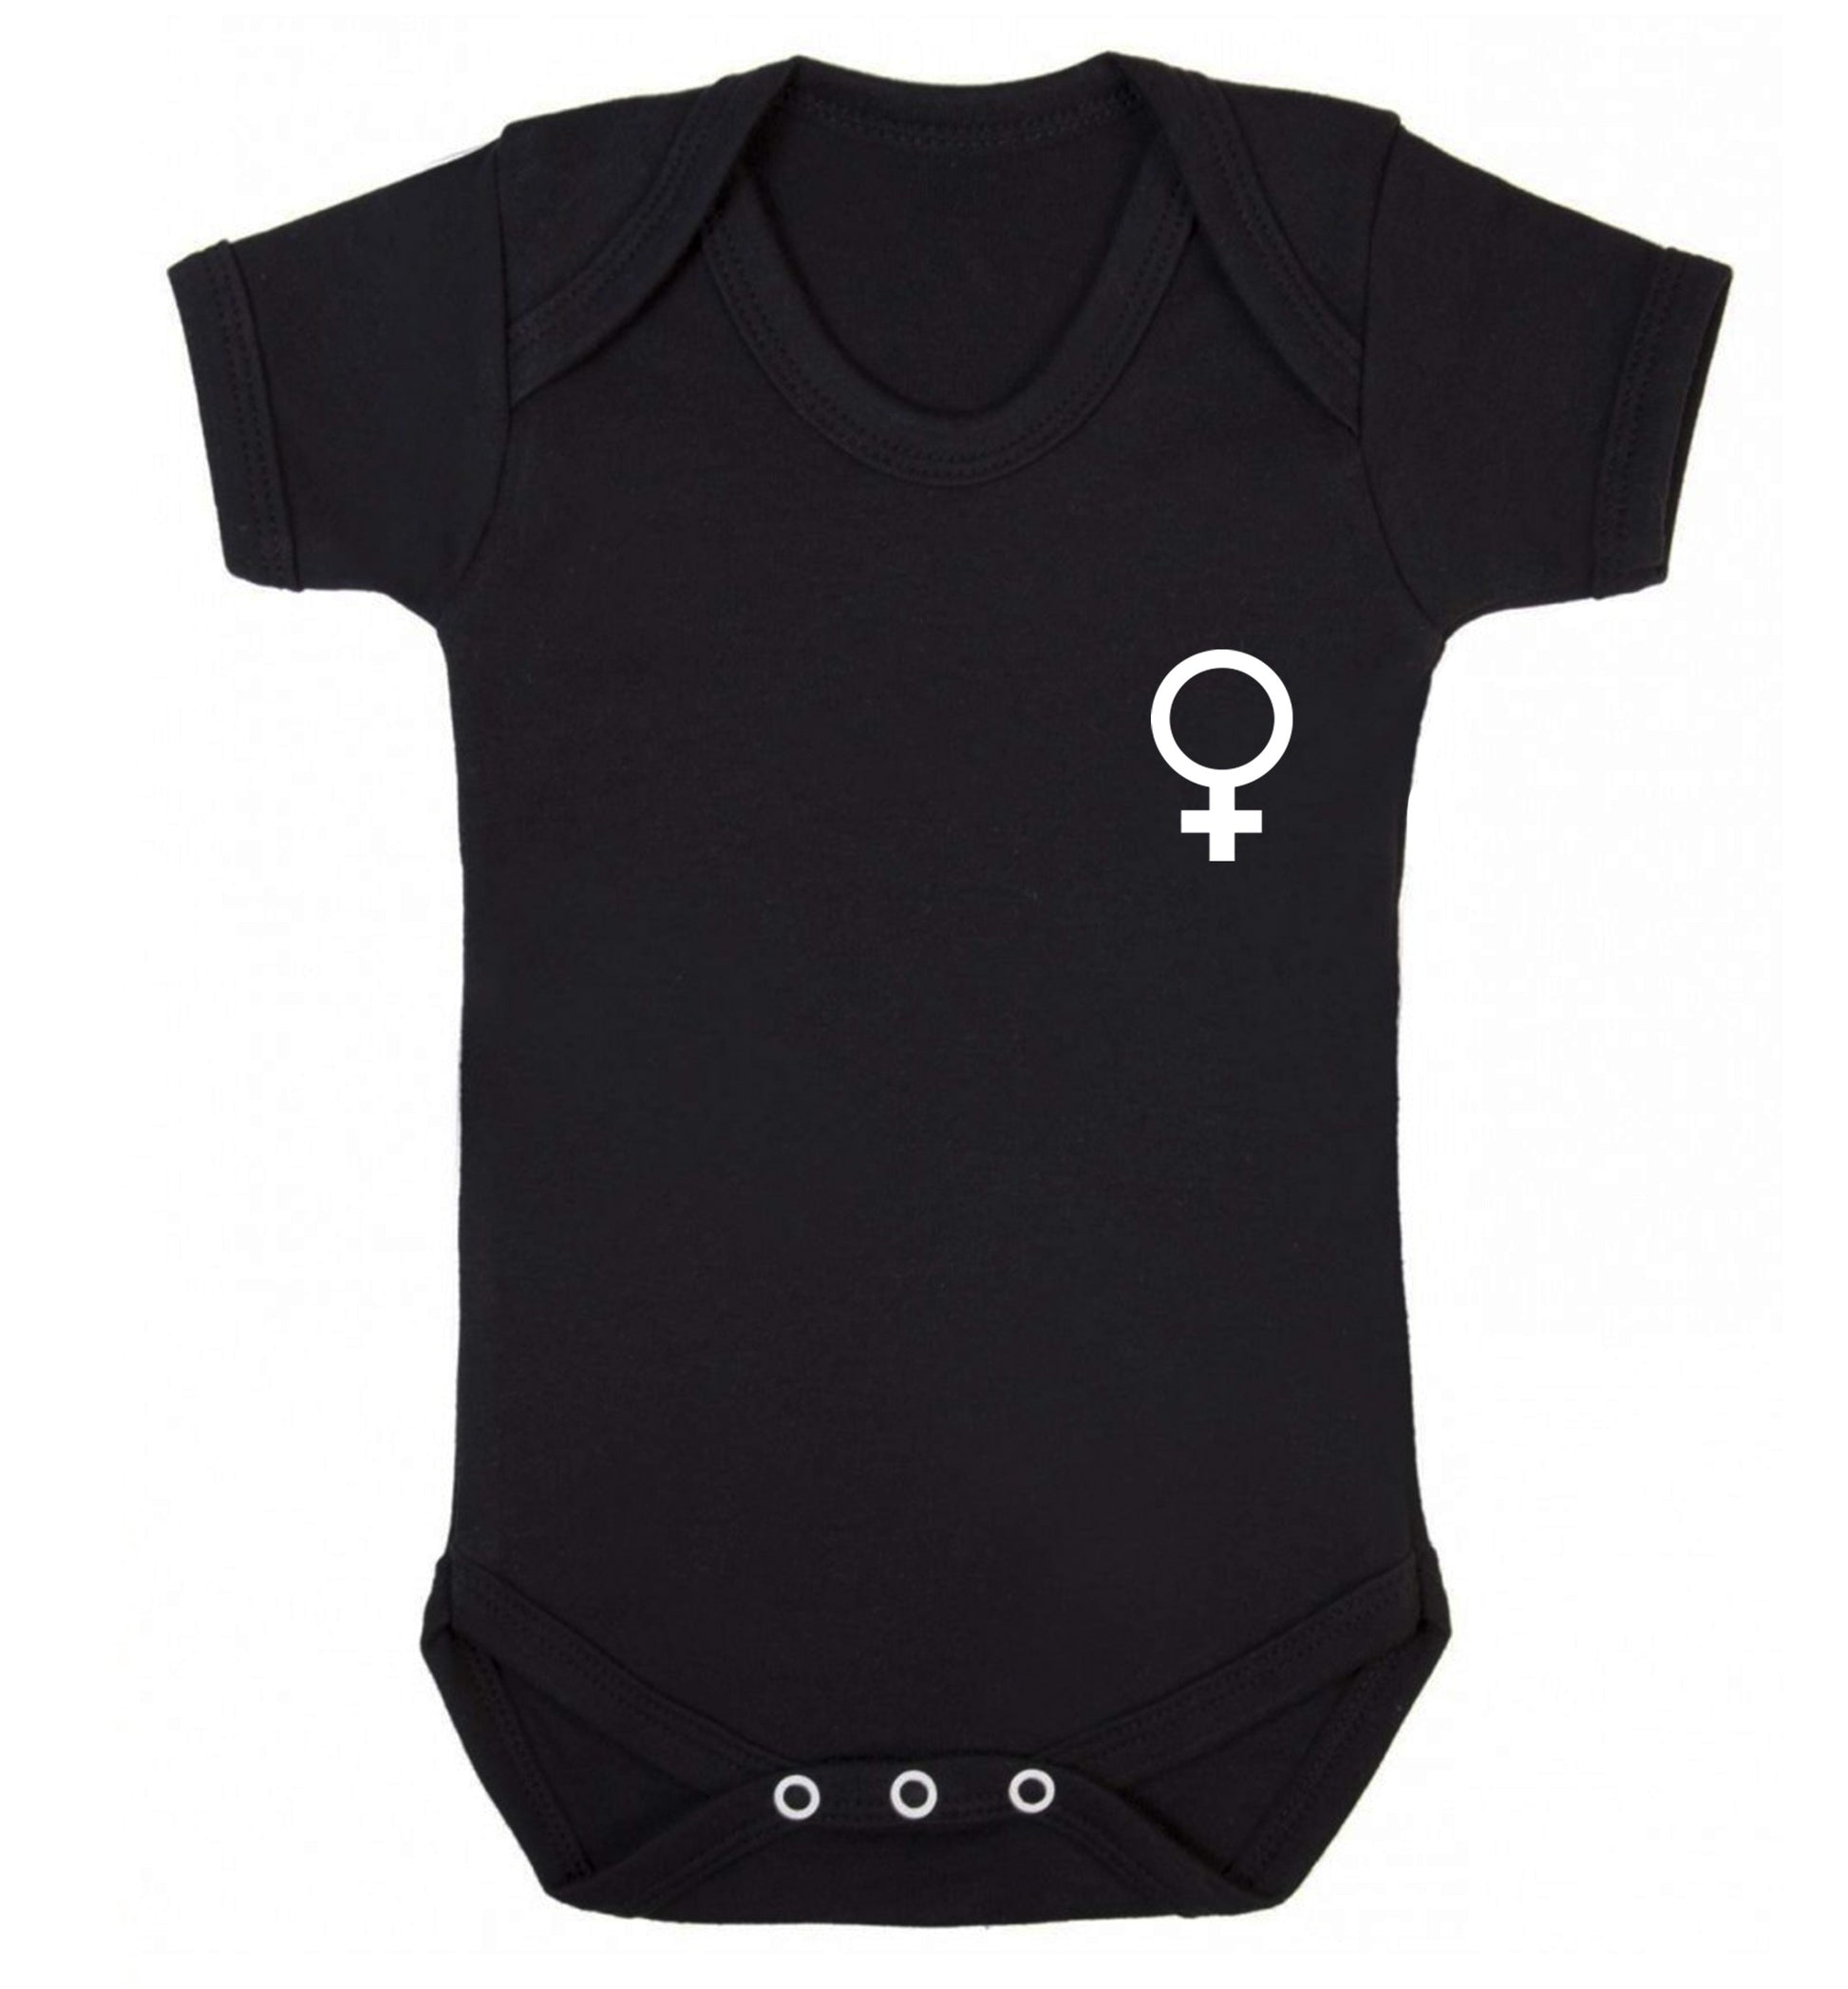 Female pocket symbol Baby Vest black 18-24 months